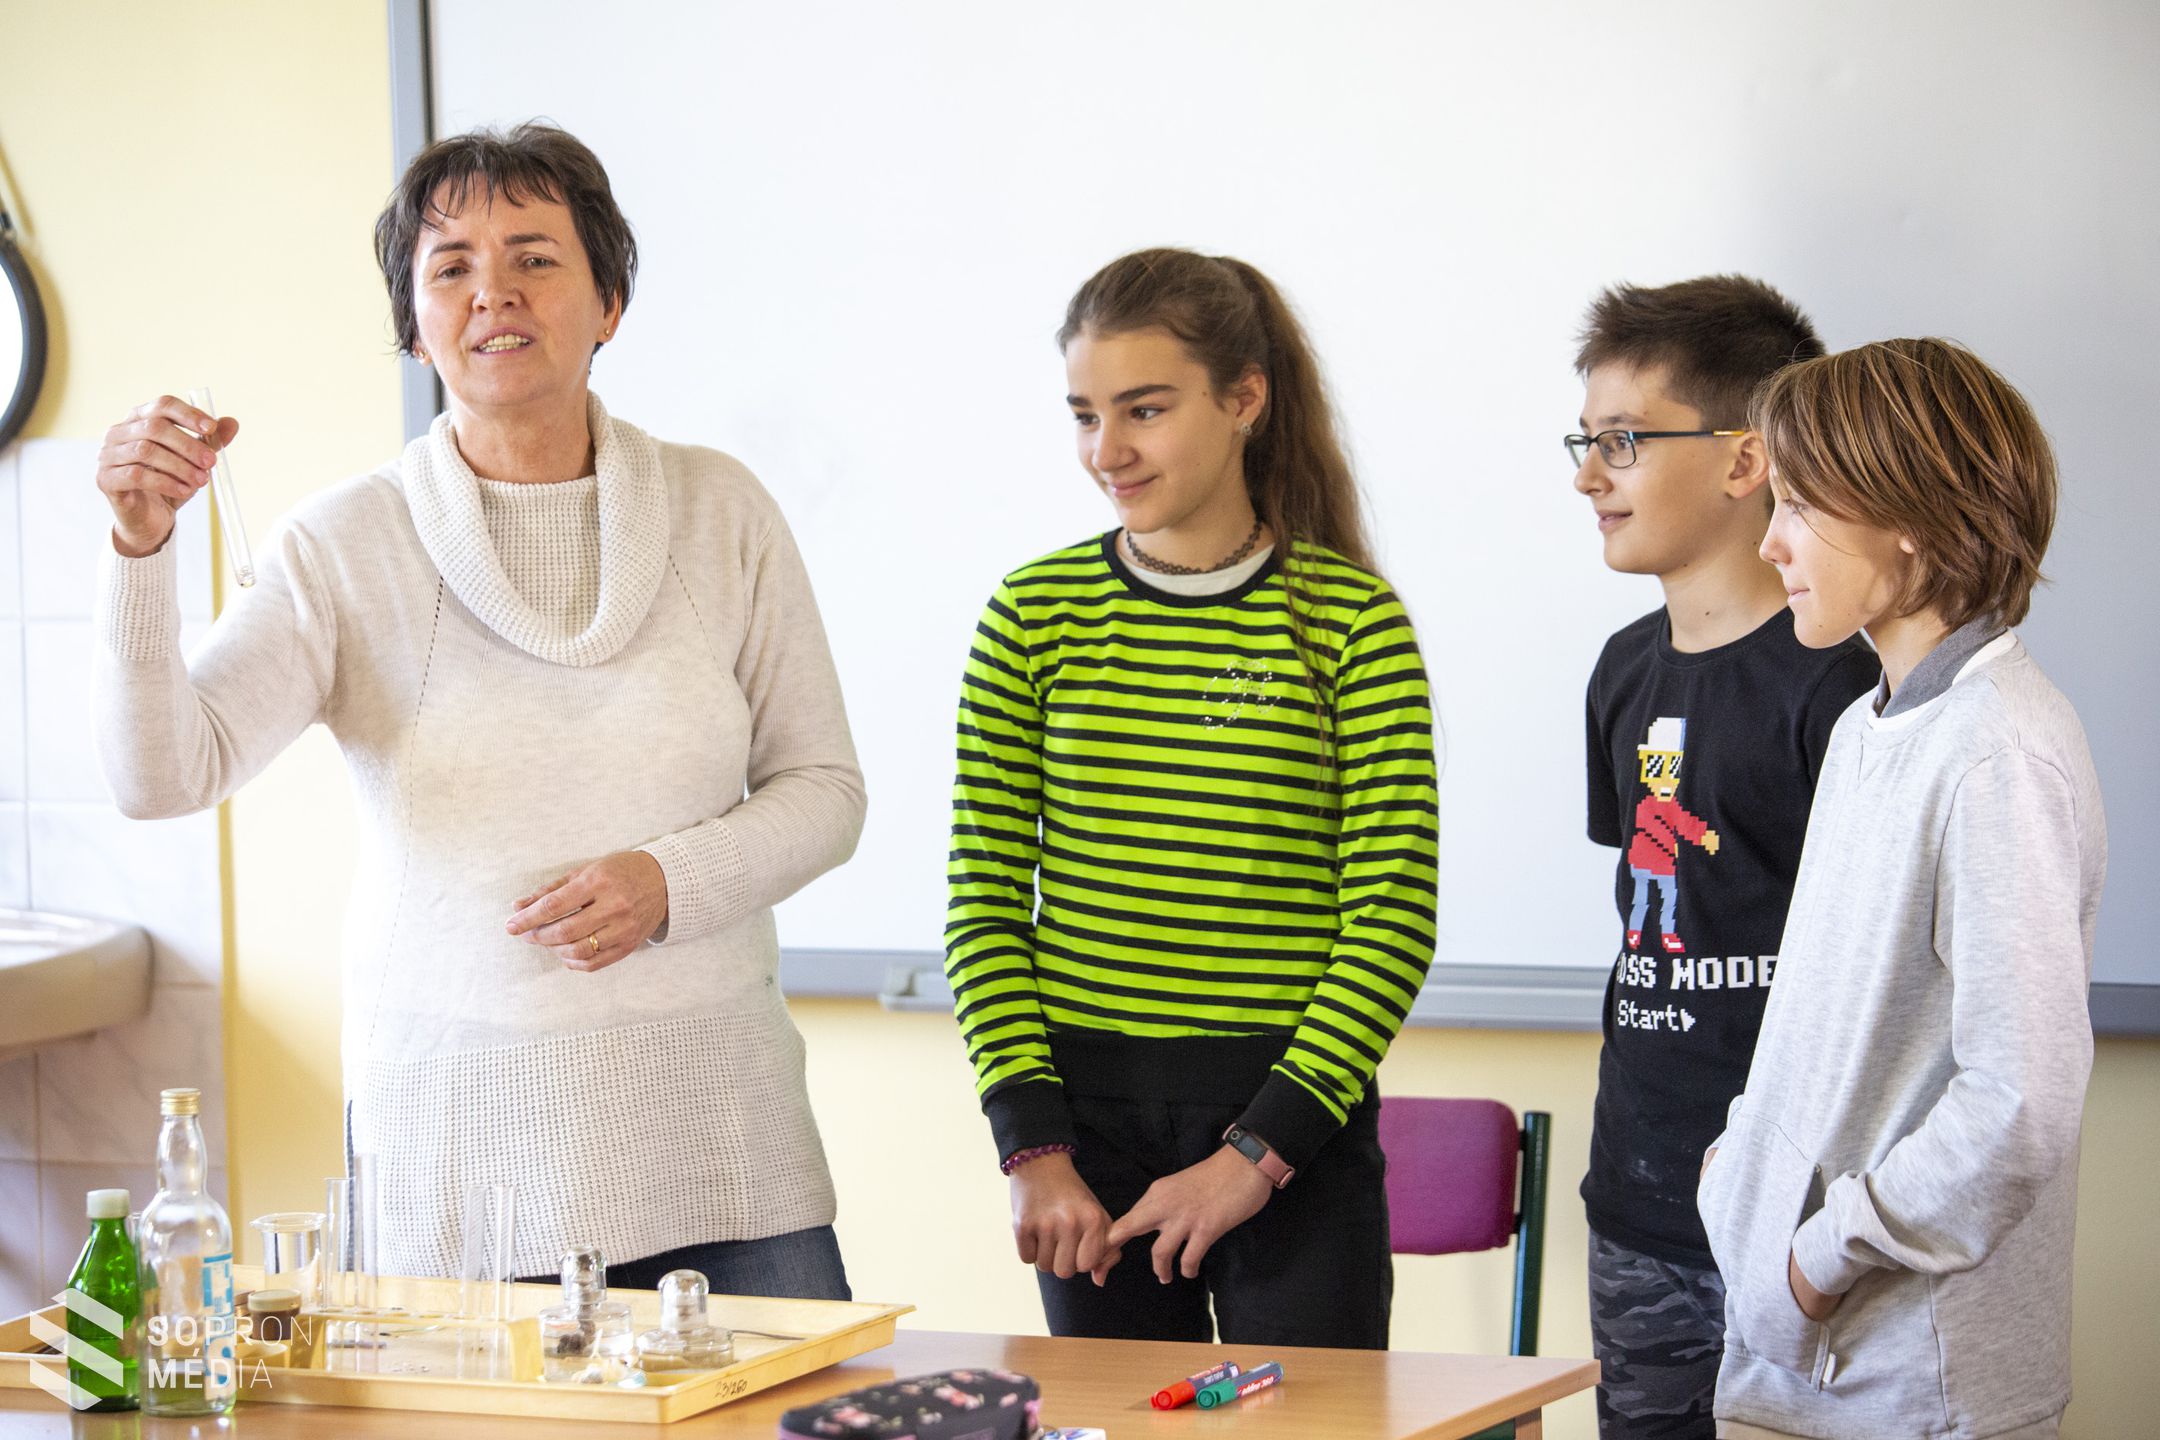 Rangos díjat kapott a sopronkövesdi iskola tanára!